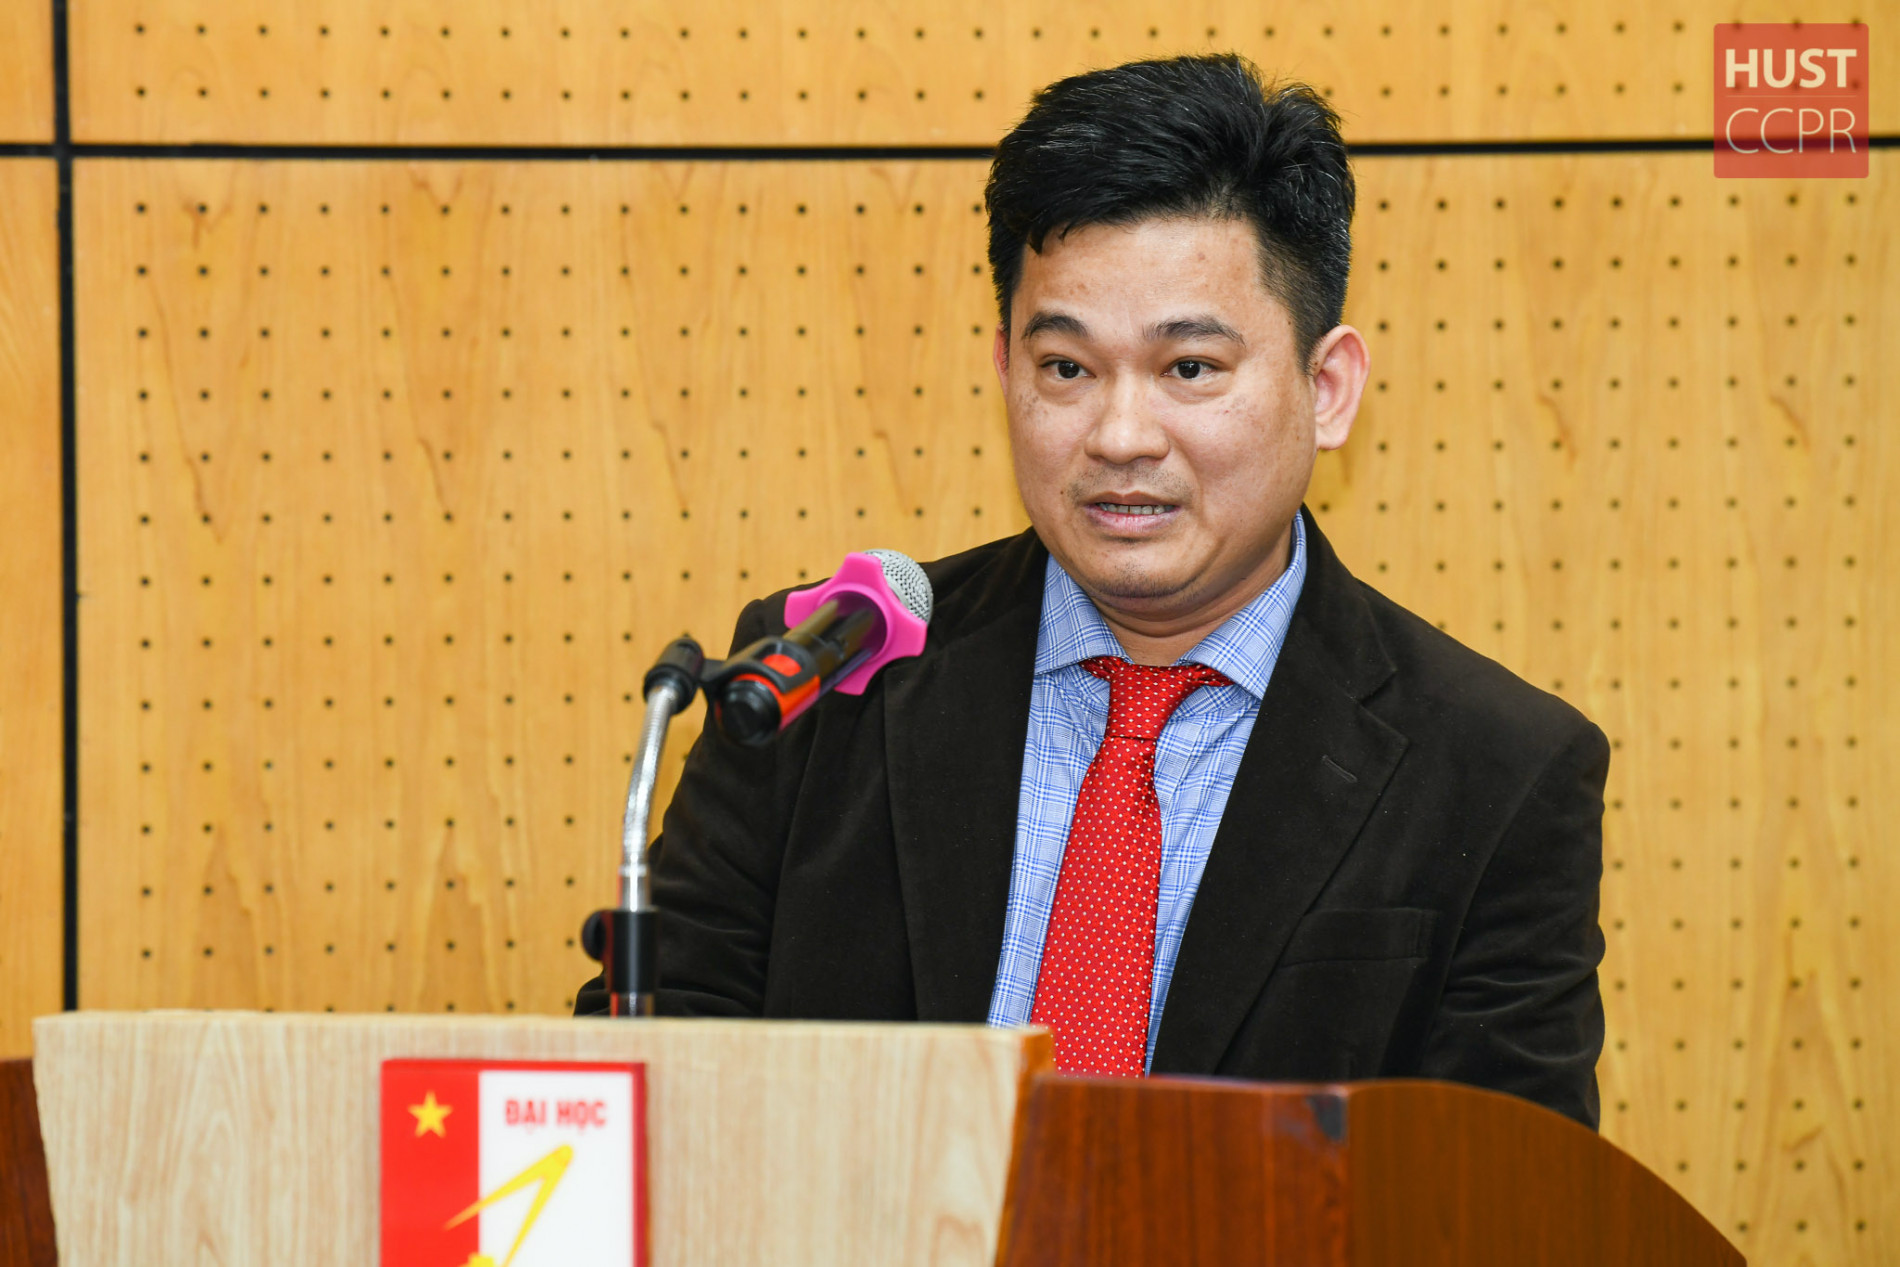 Bách khoa Hà Nội có giáo sư trẻ nhất Việt Nam năm 2022 